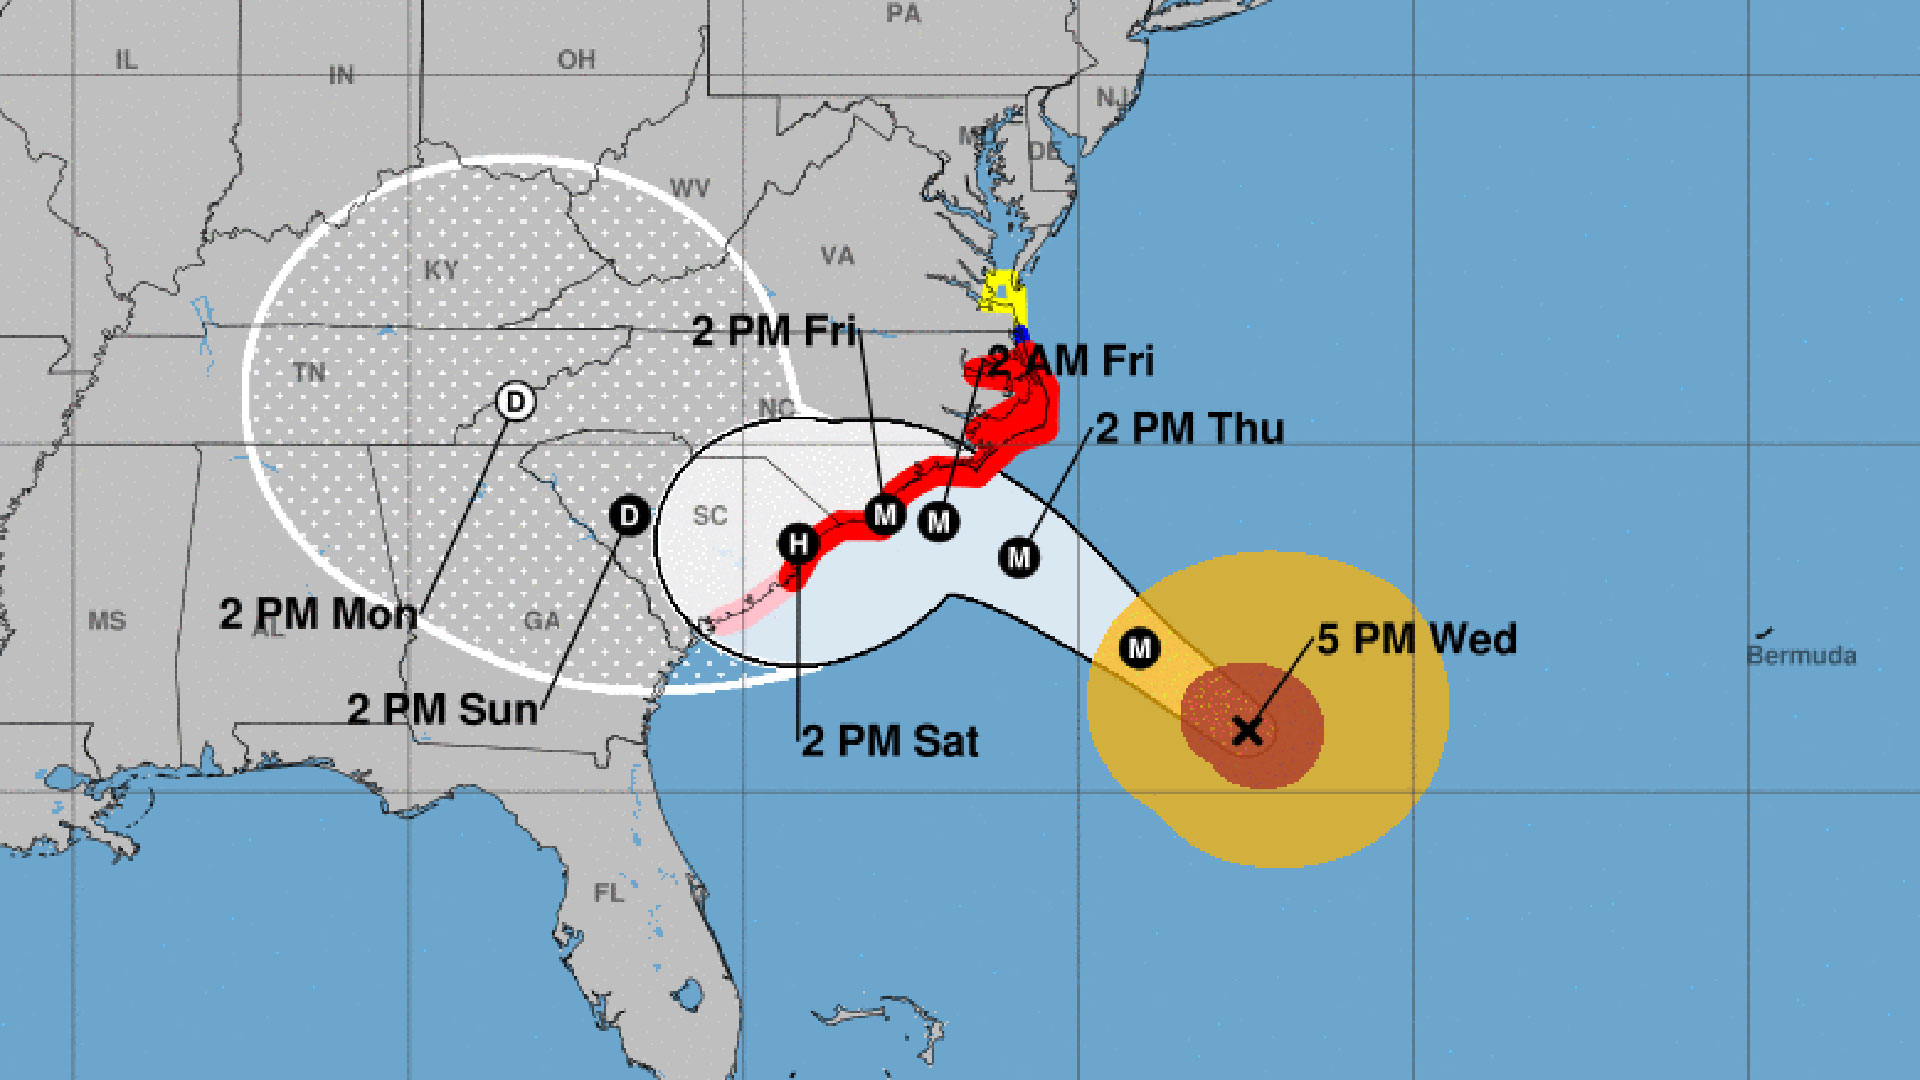 El reporte del NHC del miércoles a las 5 pm sobre el huracán Florence